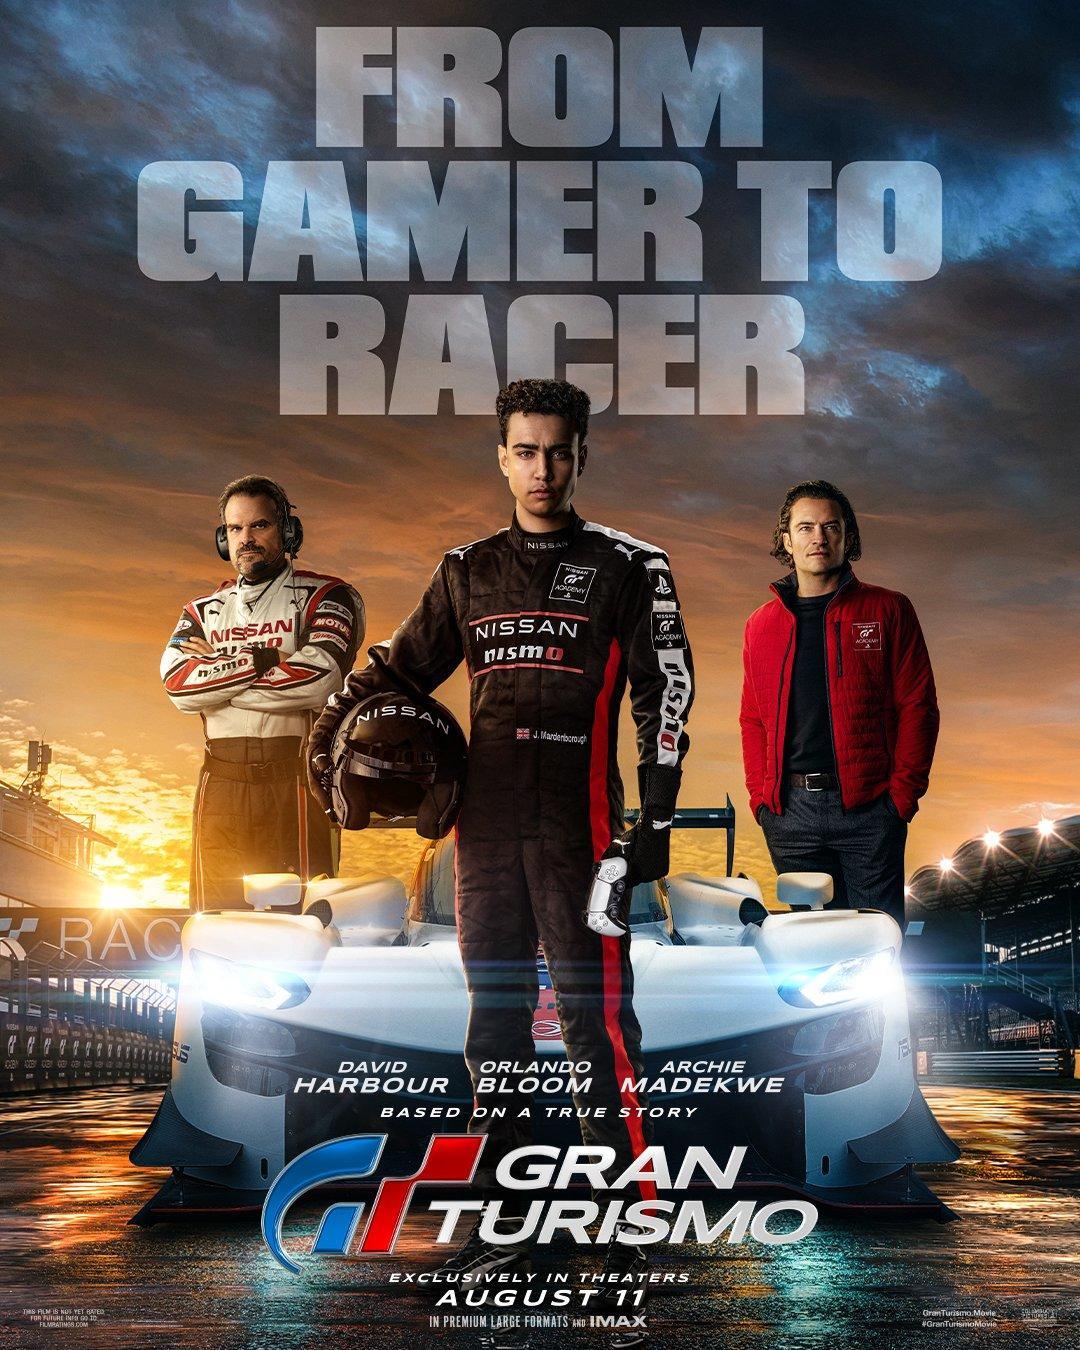  Gran Turismo 6 : Sony Computer Entertainme: Movies & TV